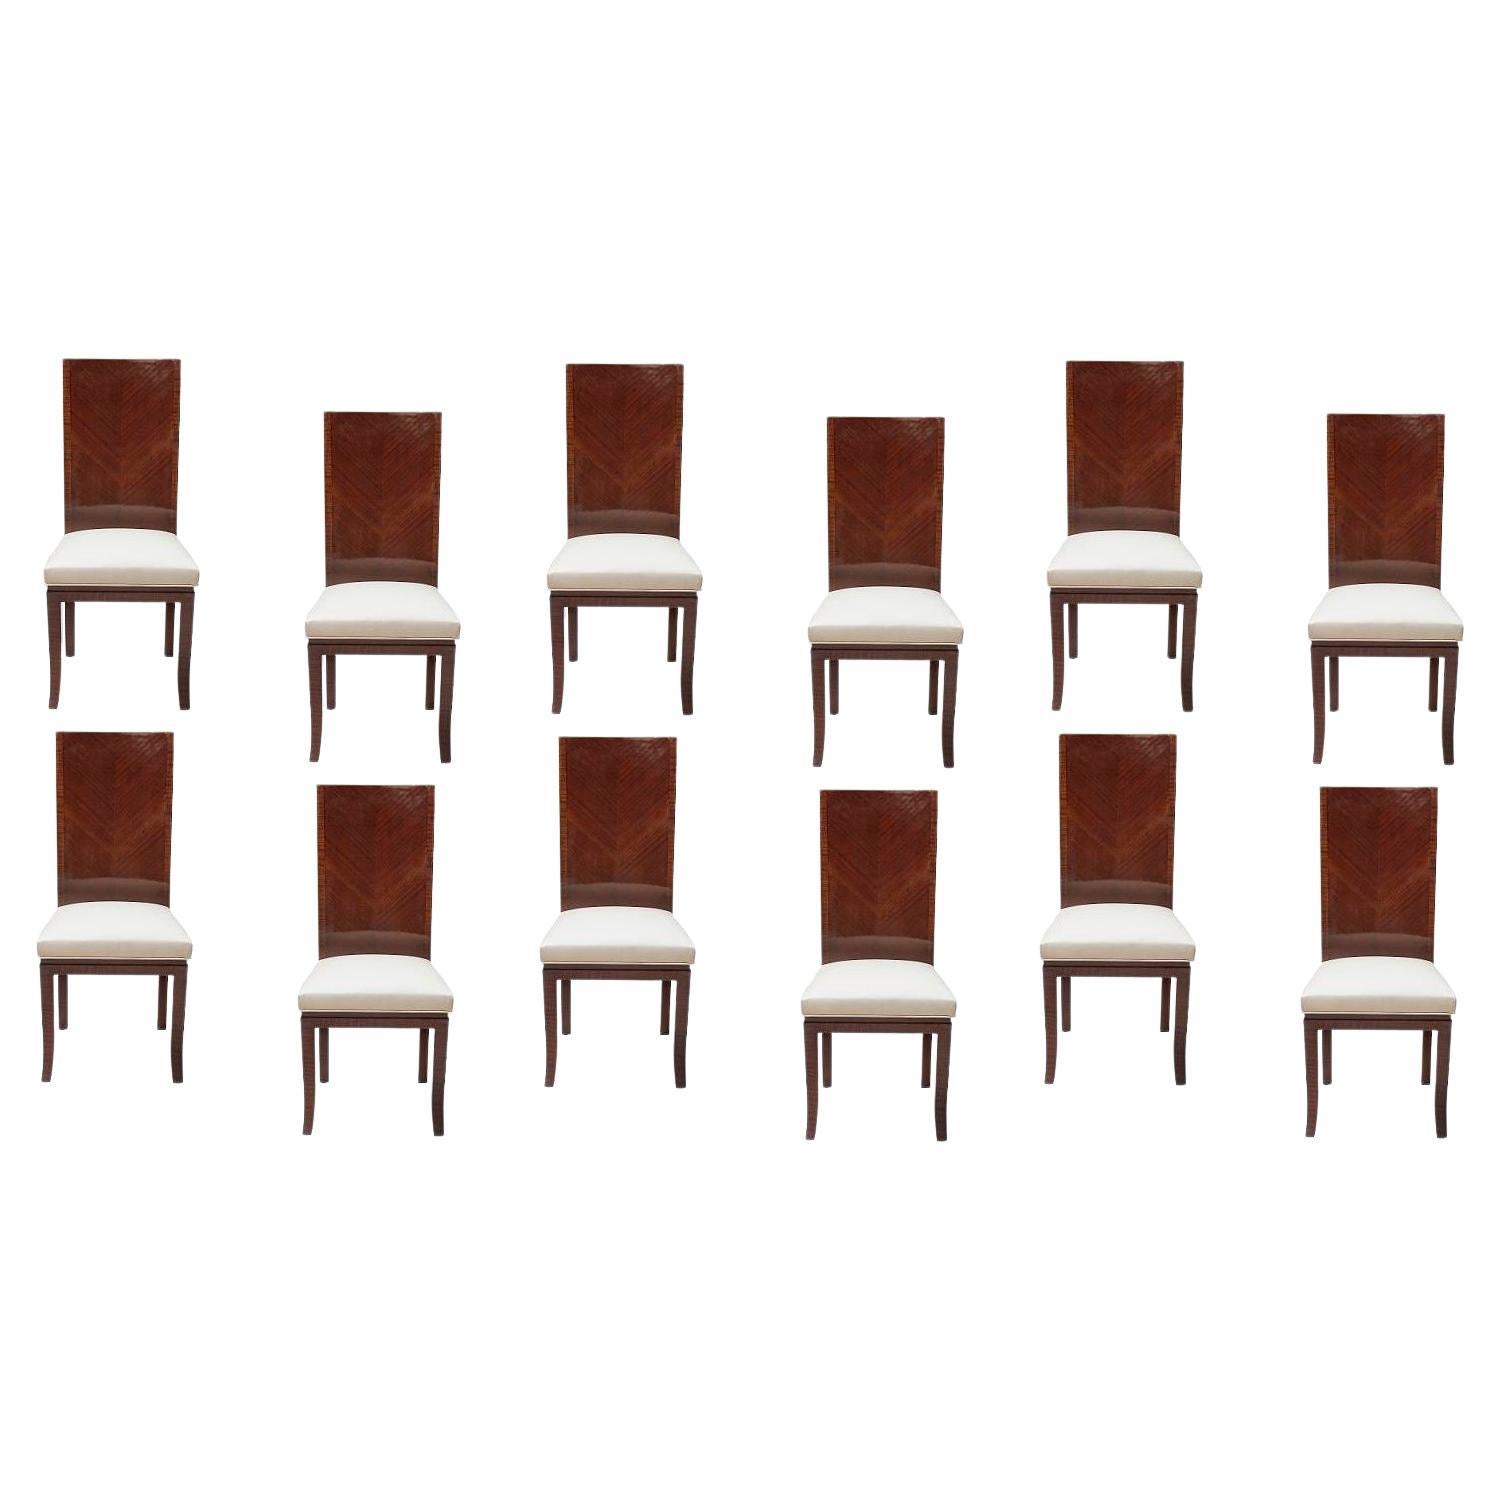 "Set of 12 Chairs Art Déco", 1930, France en cuir et bois